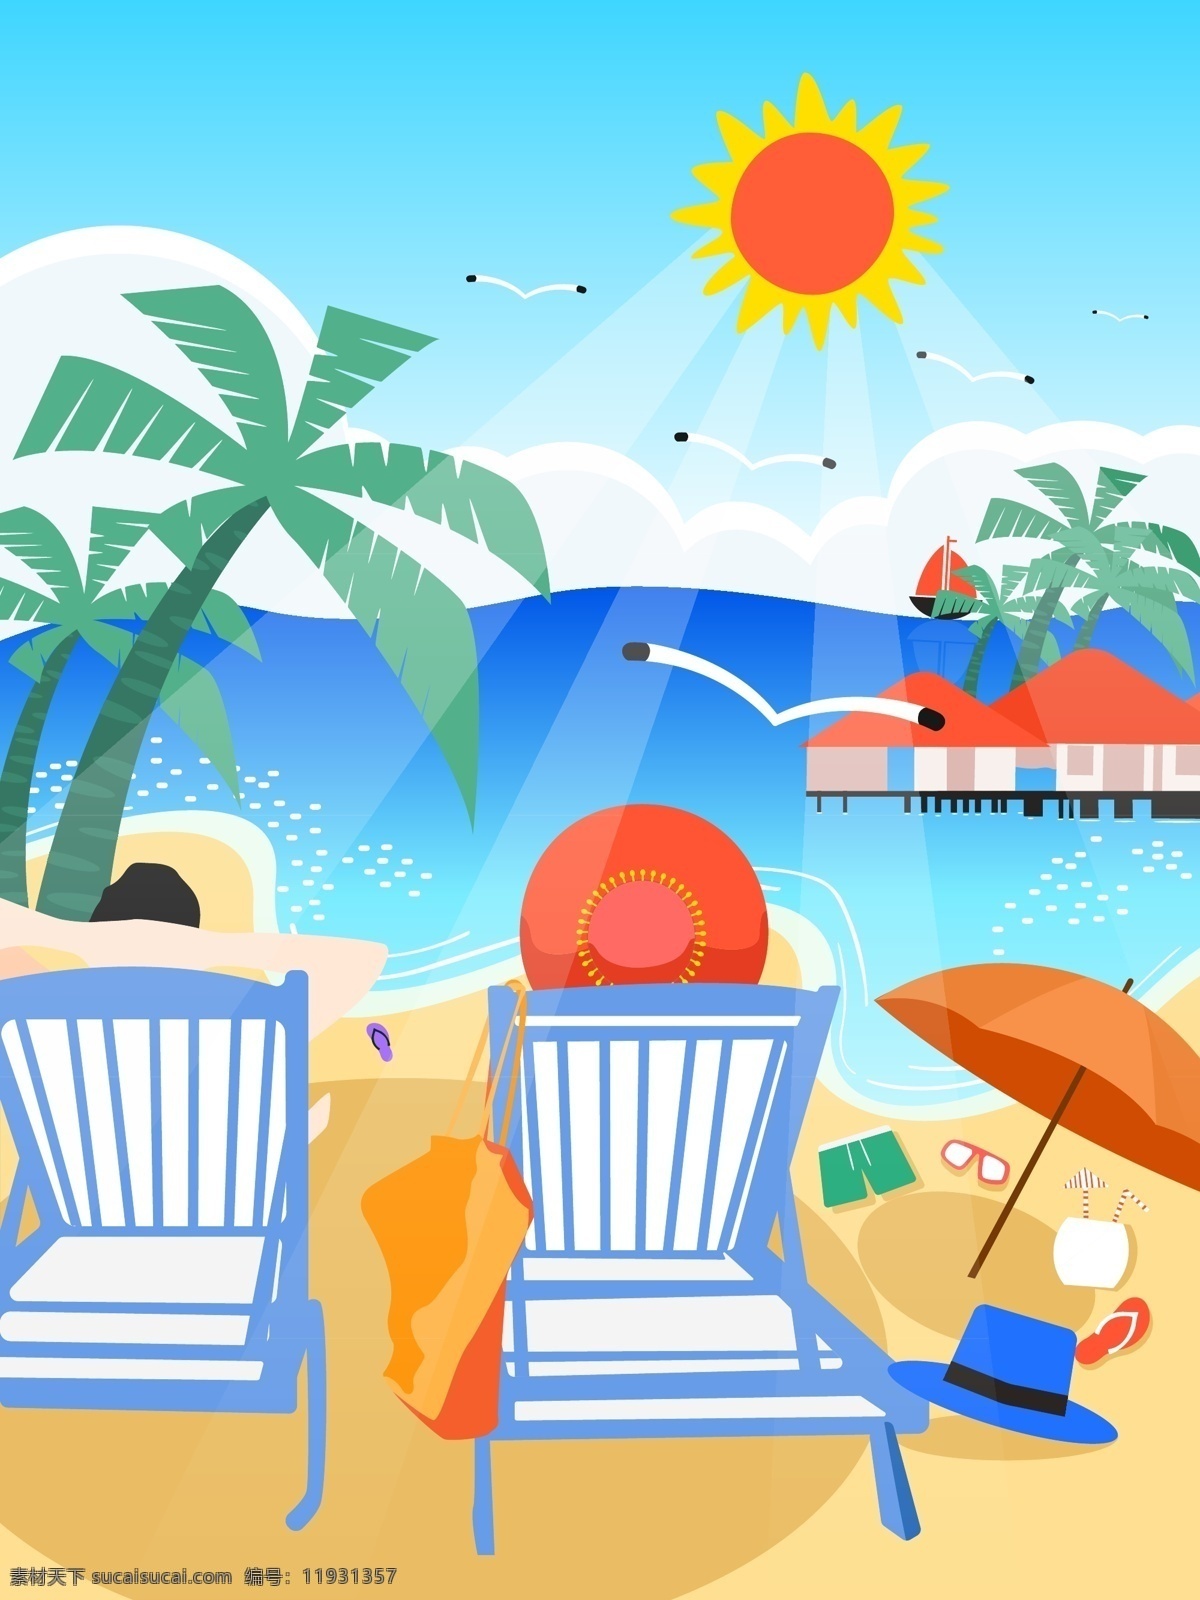 海边 旅游 情侣 甜蜜 度假 原创 矢量 小 清新 插画 阳光 海滩 海鸥 太阳伞 太阳镜 椰子树 红房子 眼镜